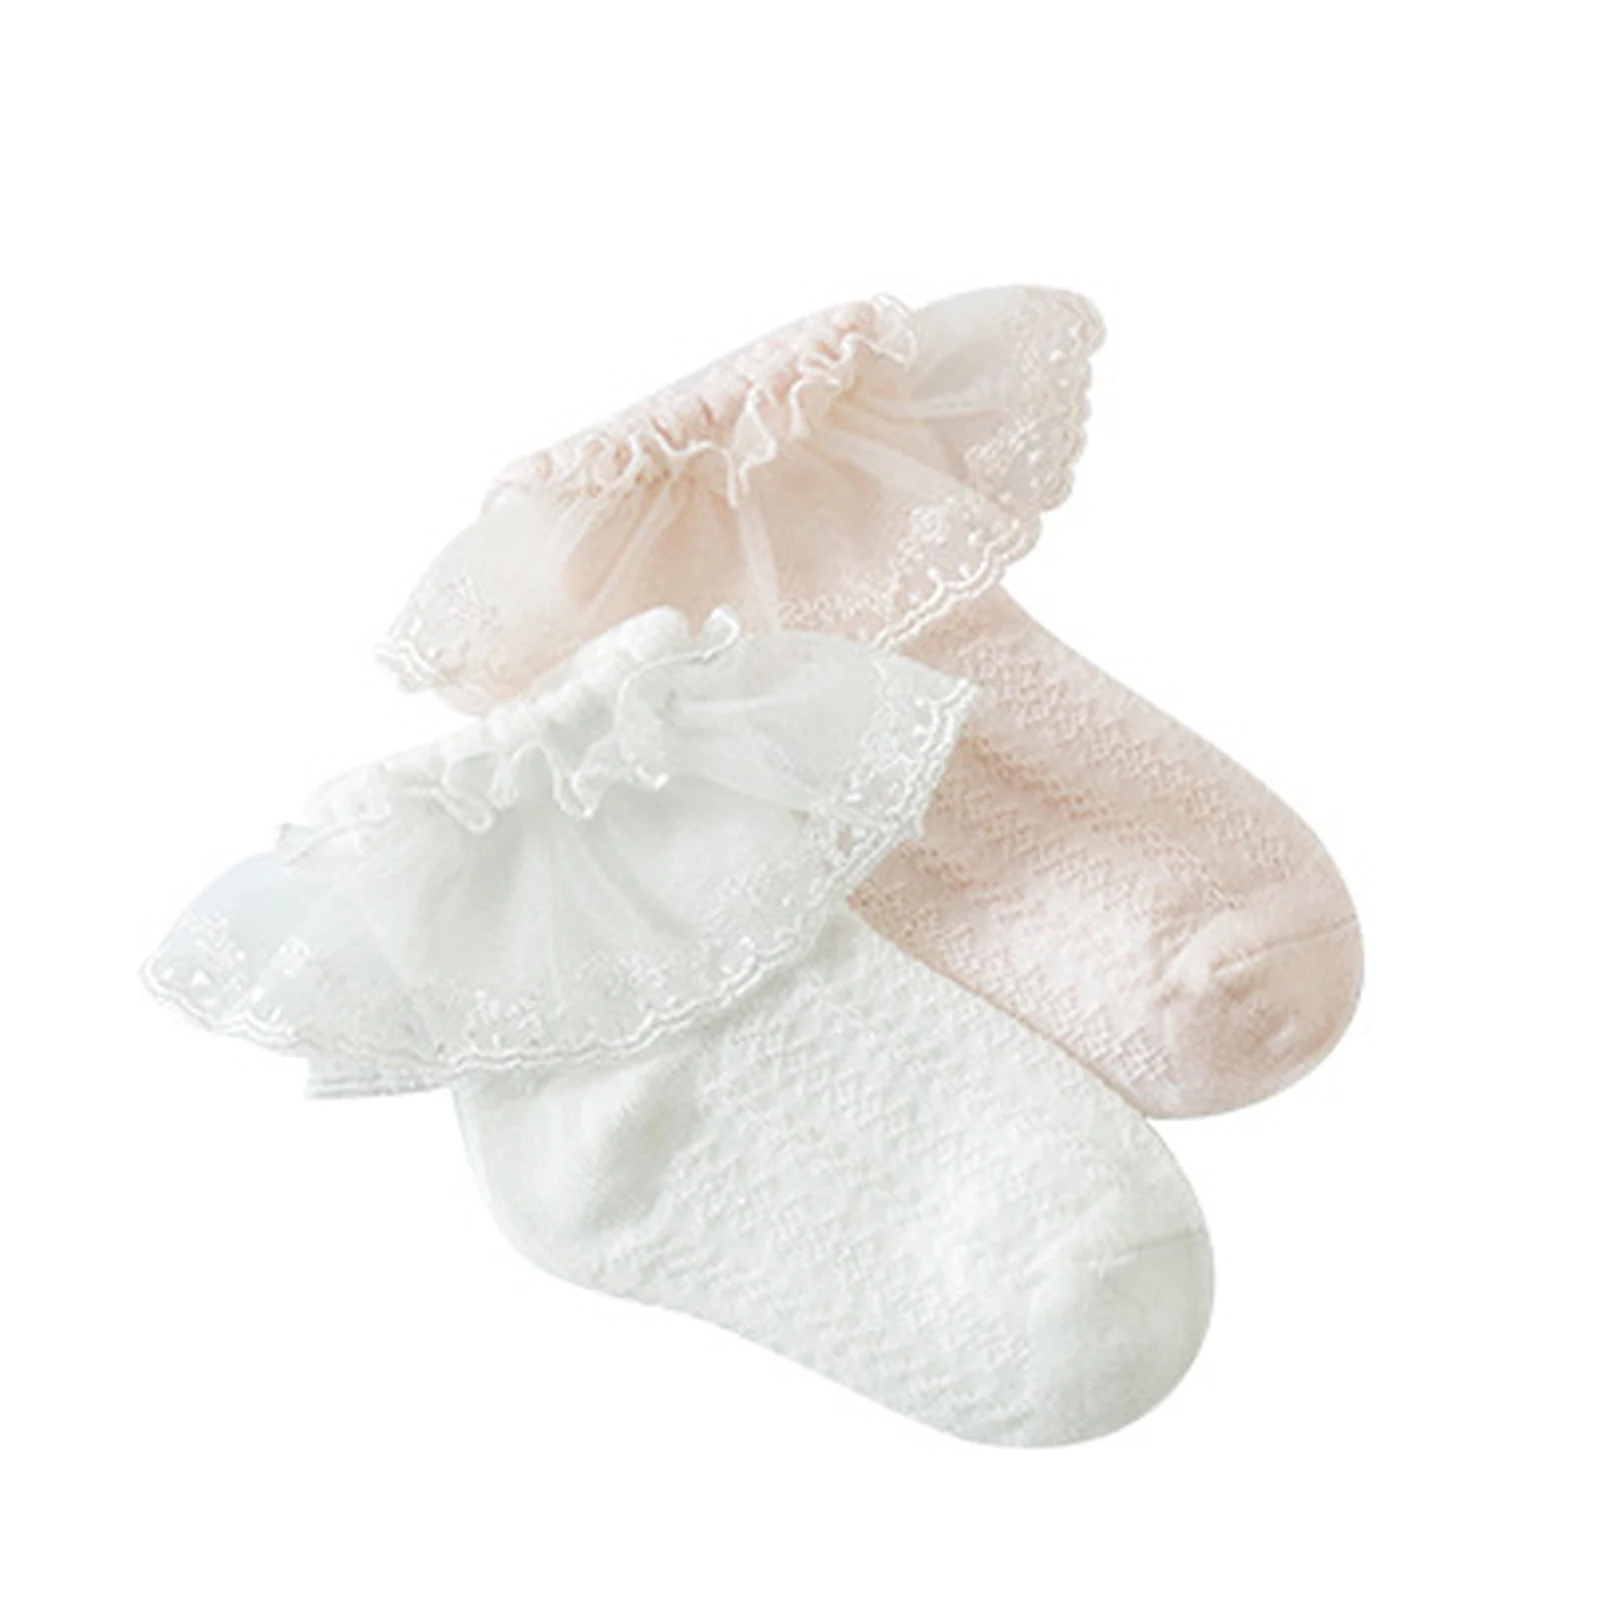 1PCS Прекрасни бебешки памучни чорапи Новородено бебе пролет лято / бели лък чорапи за малко дете мека дишаща глезена чорап